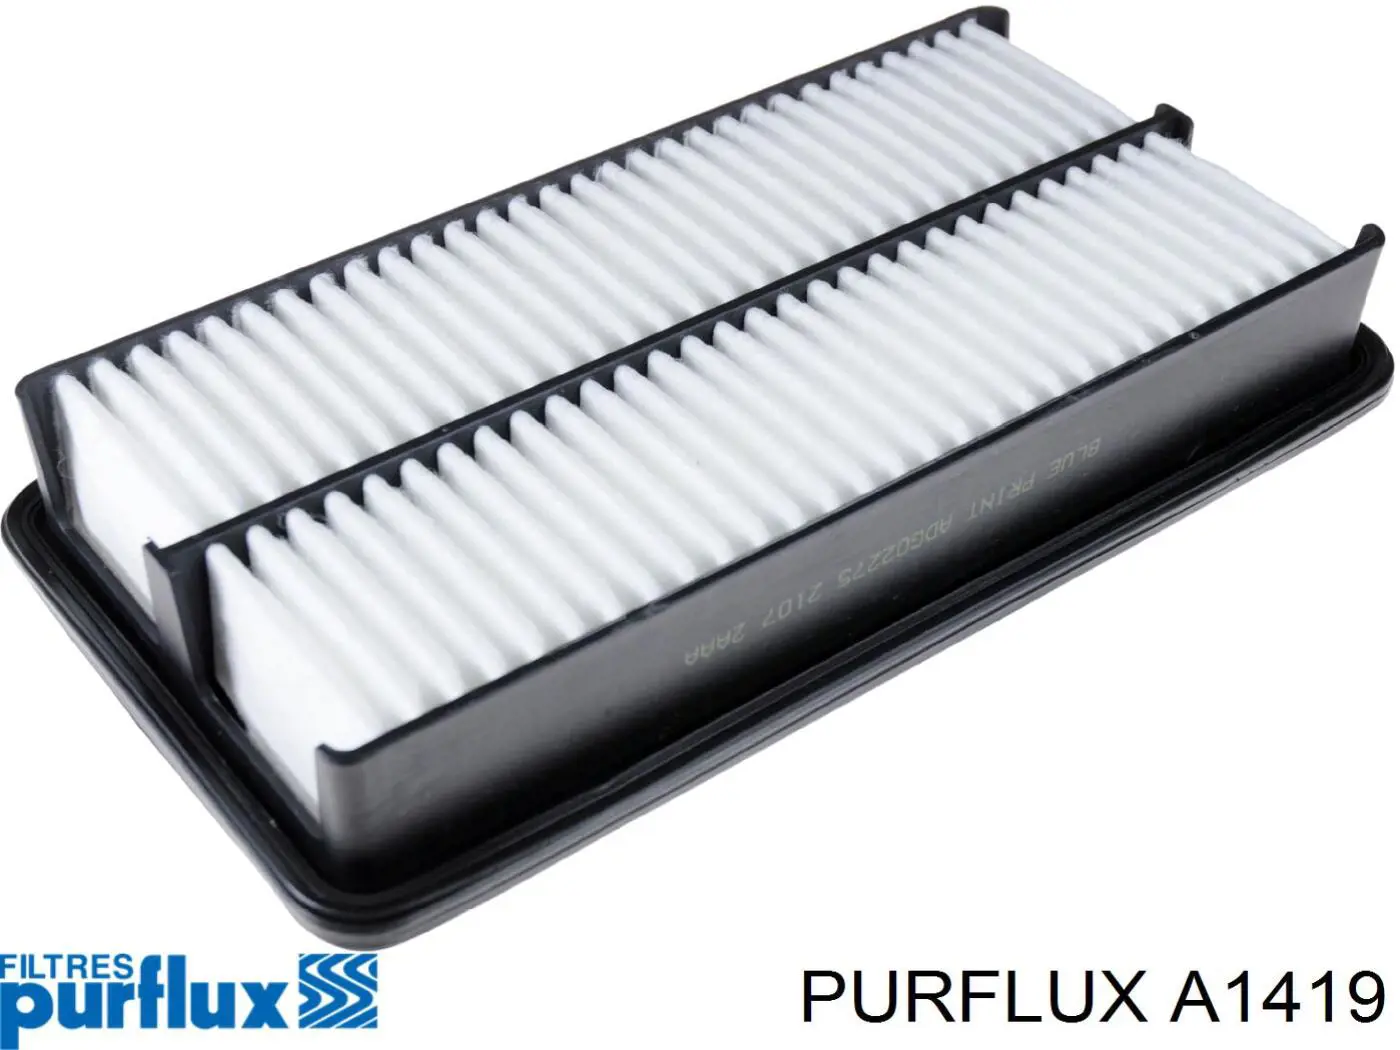 A1419 Purflux filtro de aire